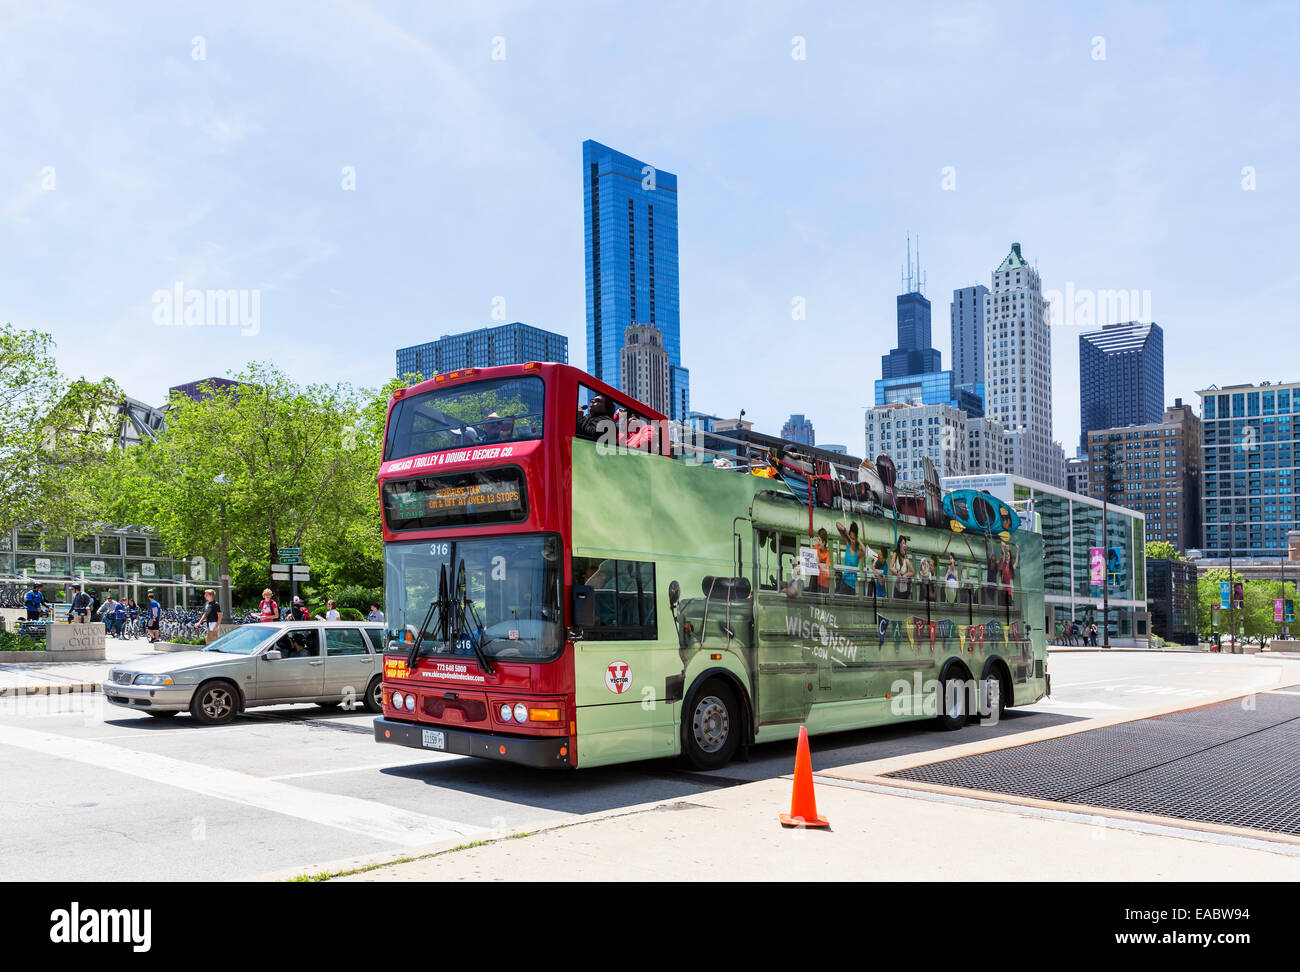 USA Illinois Chicago tour bus on street Stock Photo